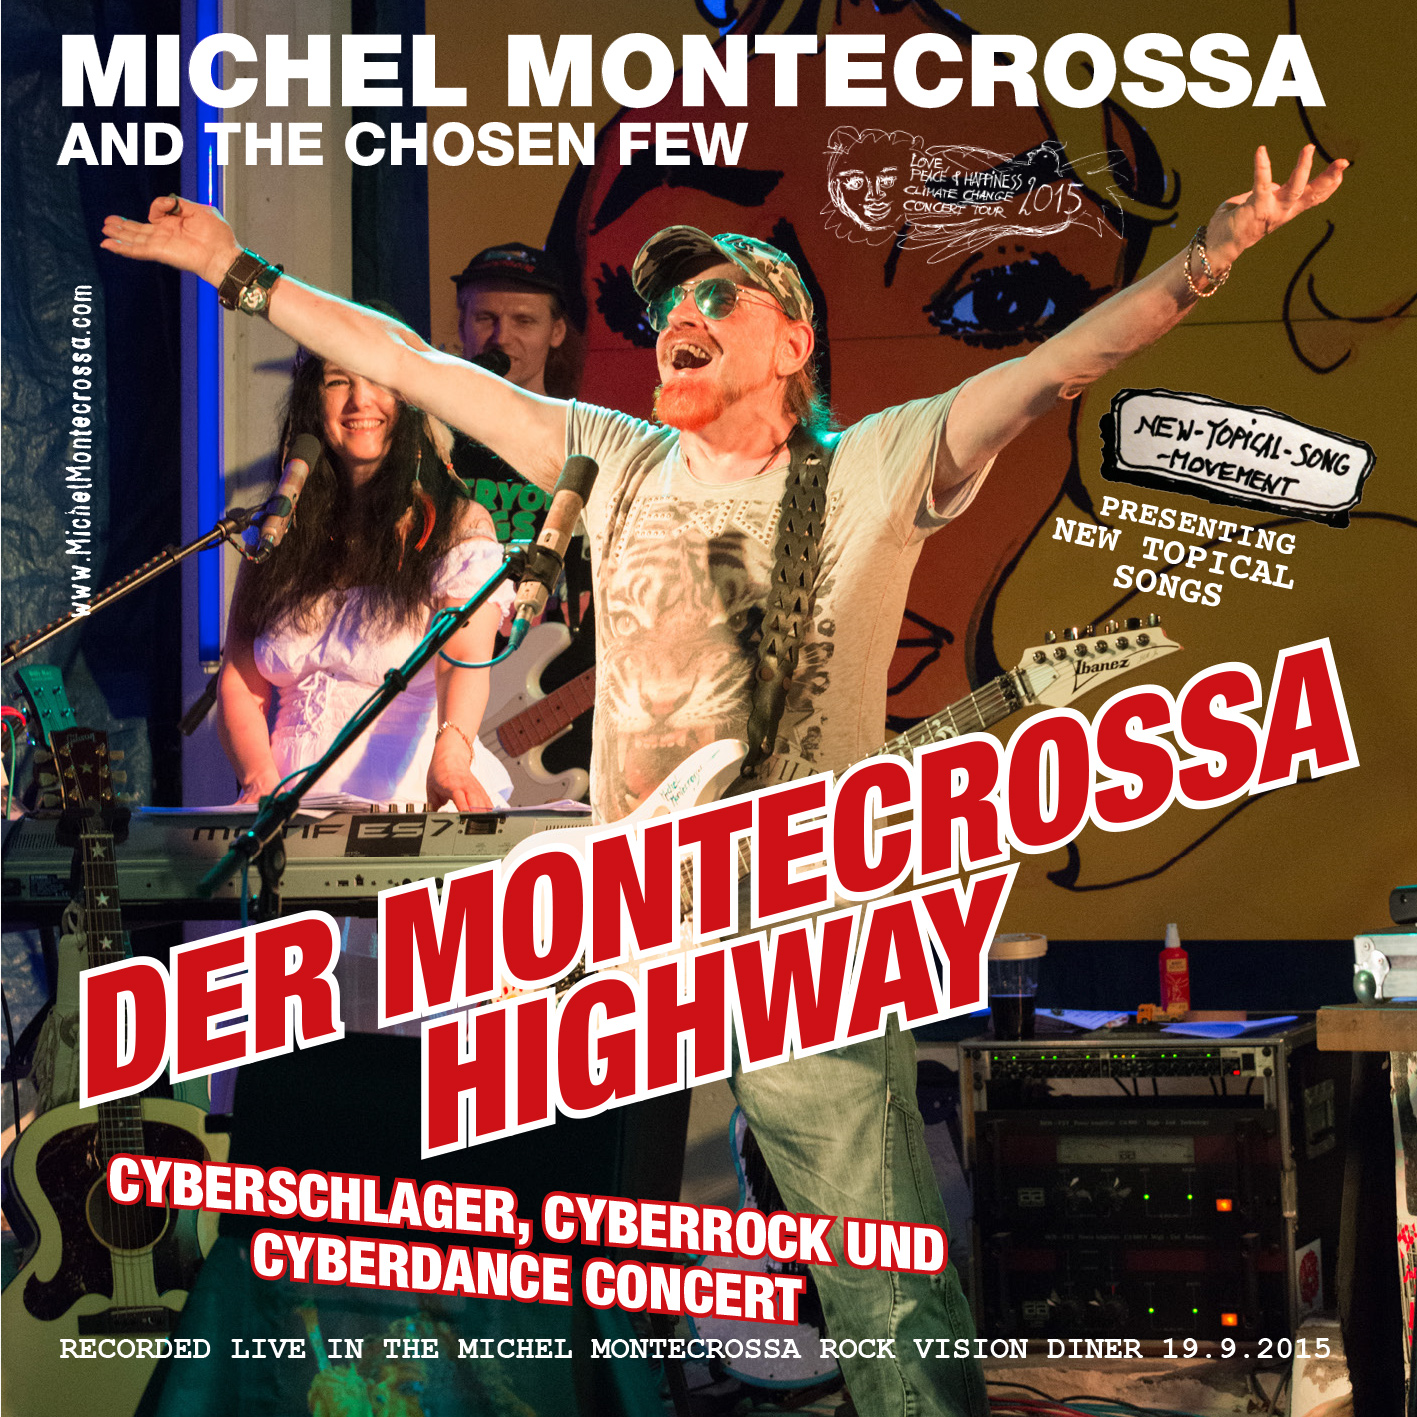 Der Montecrossa Highway Concert